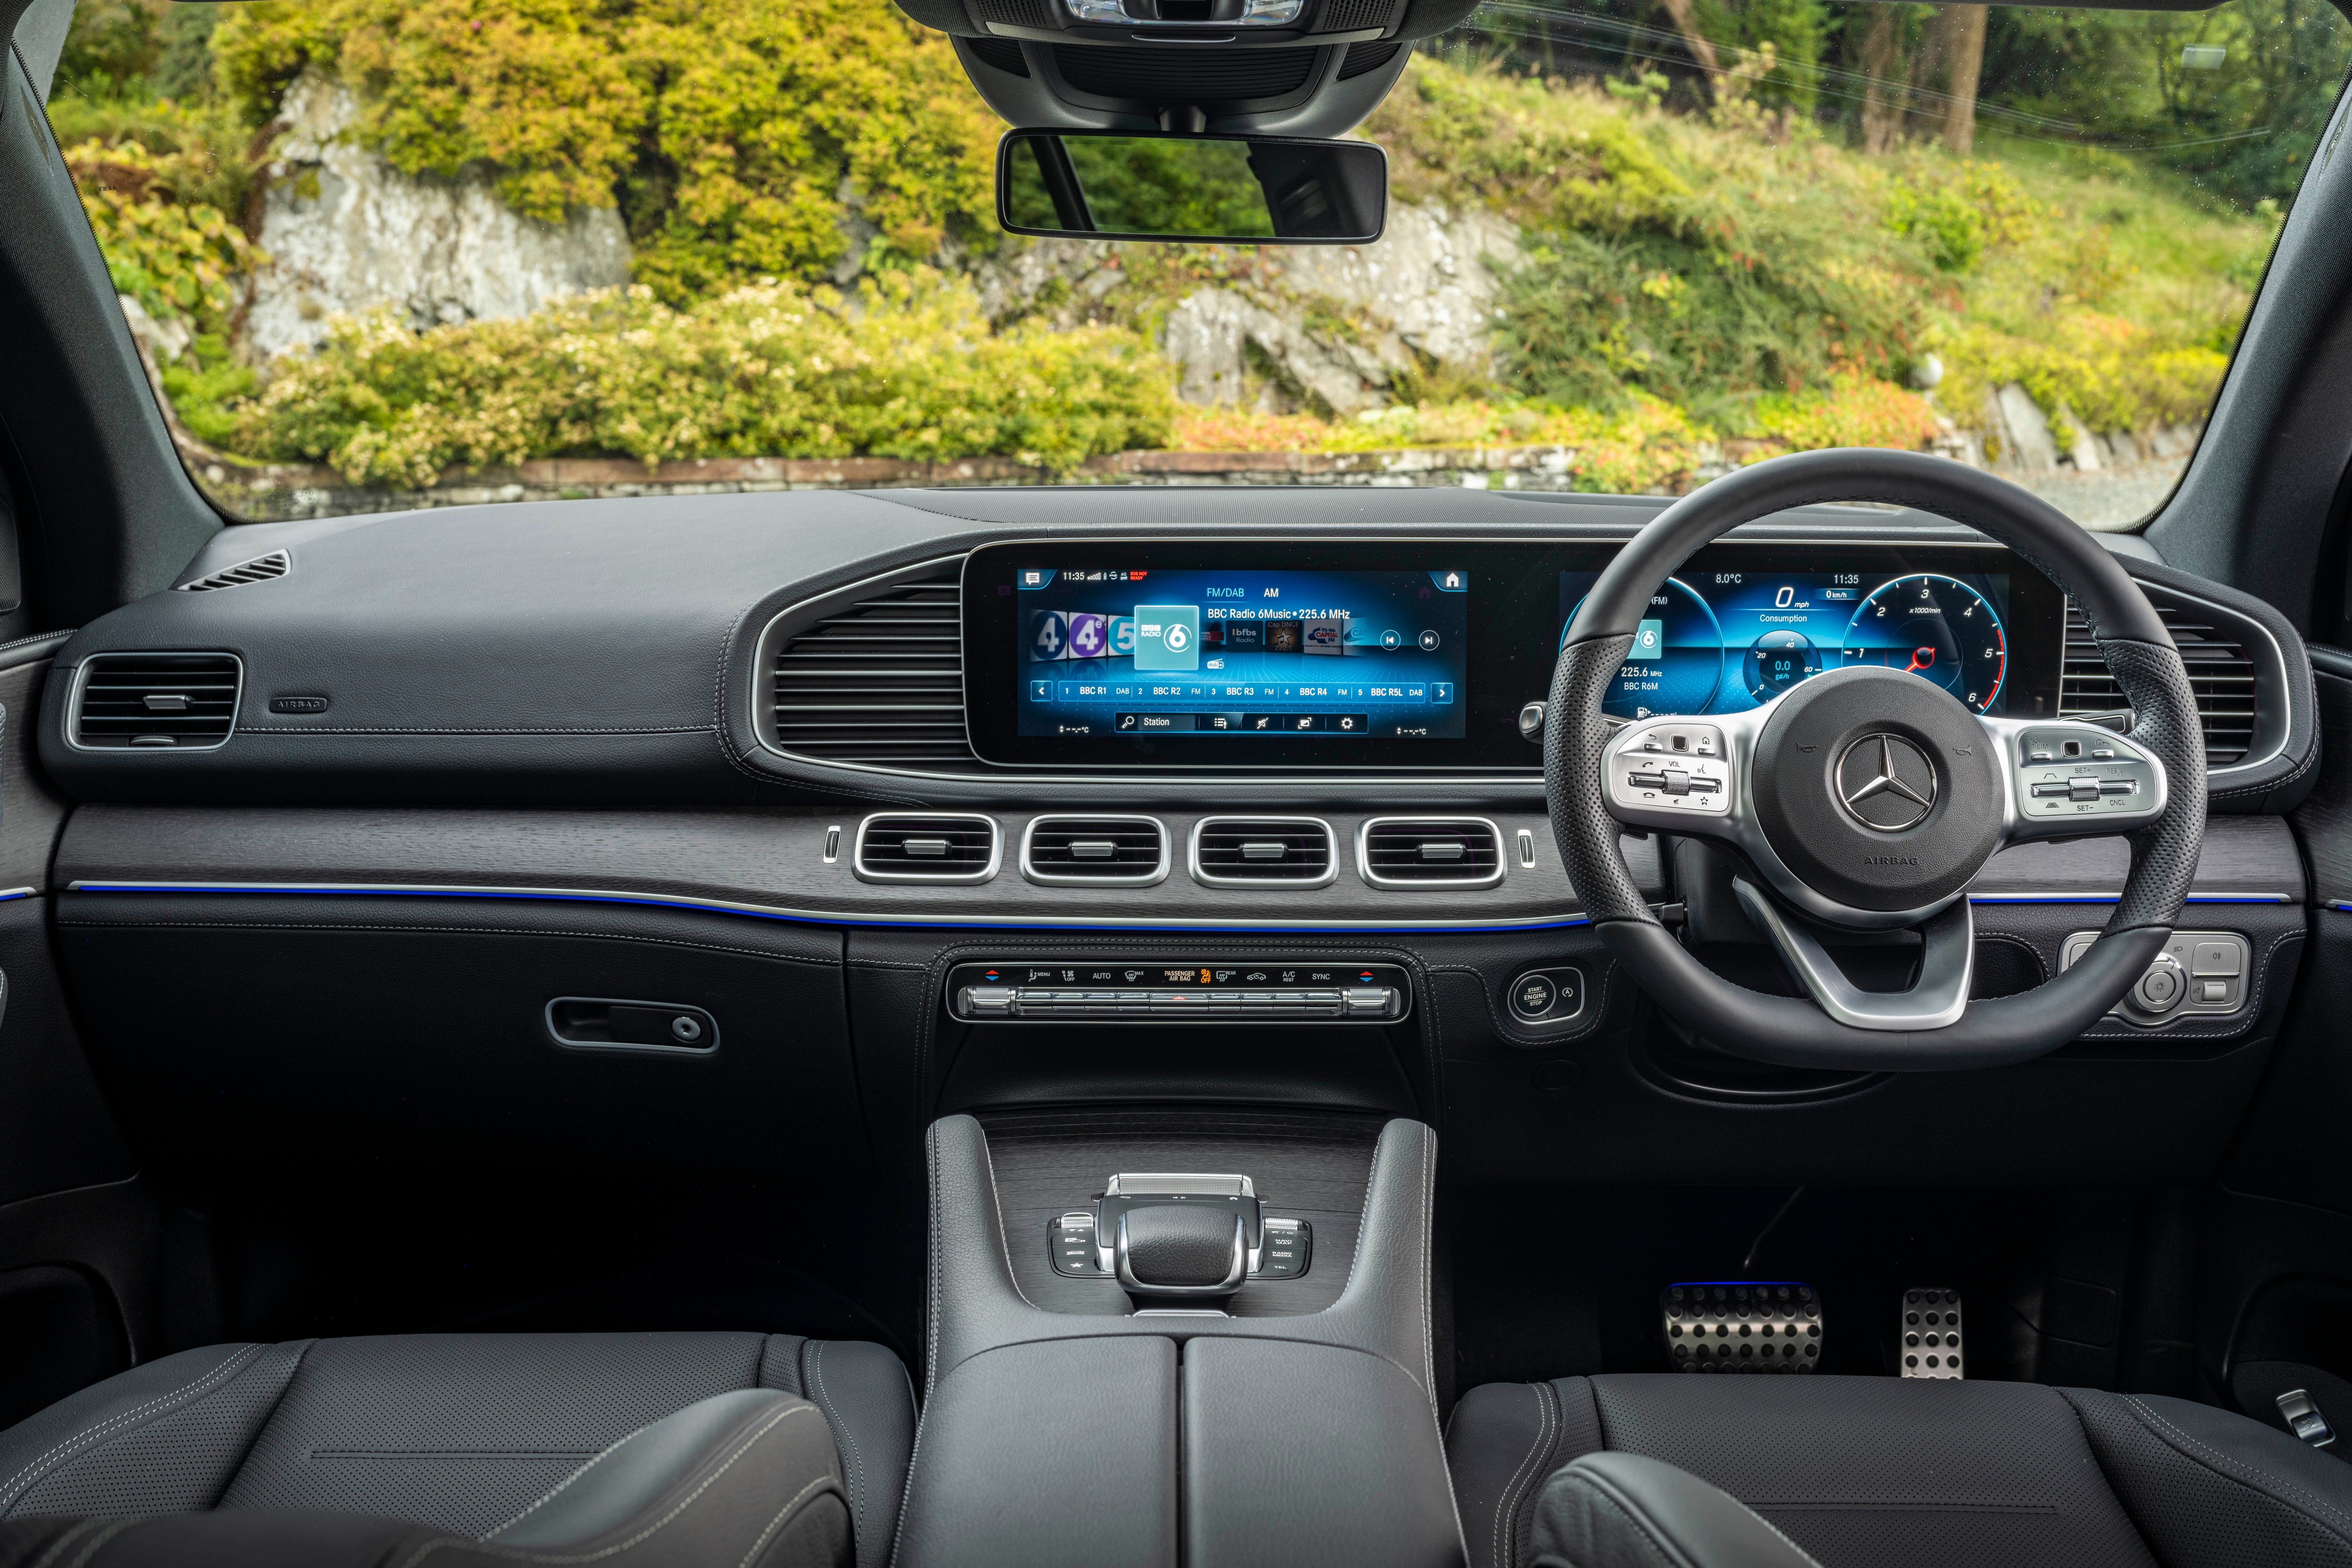 Mercedes GLE Coupe interior